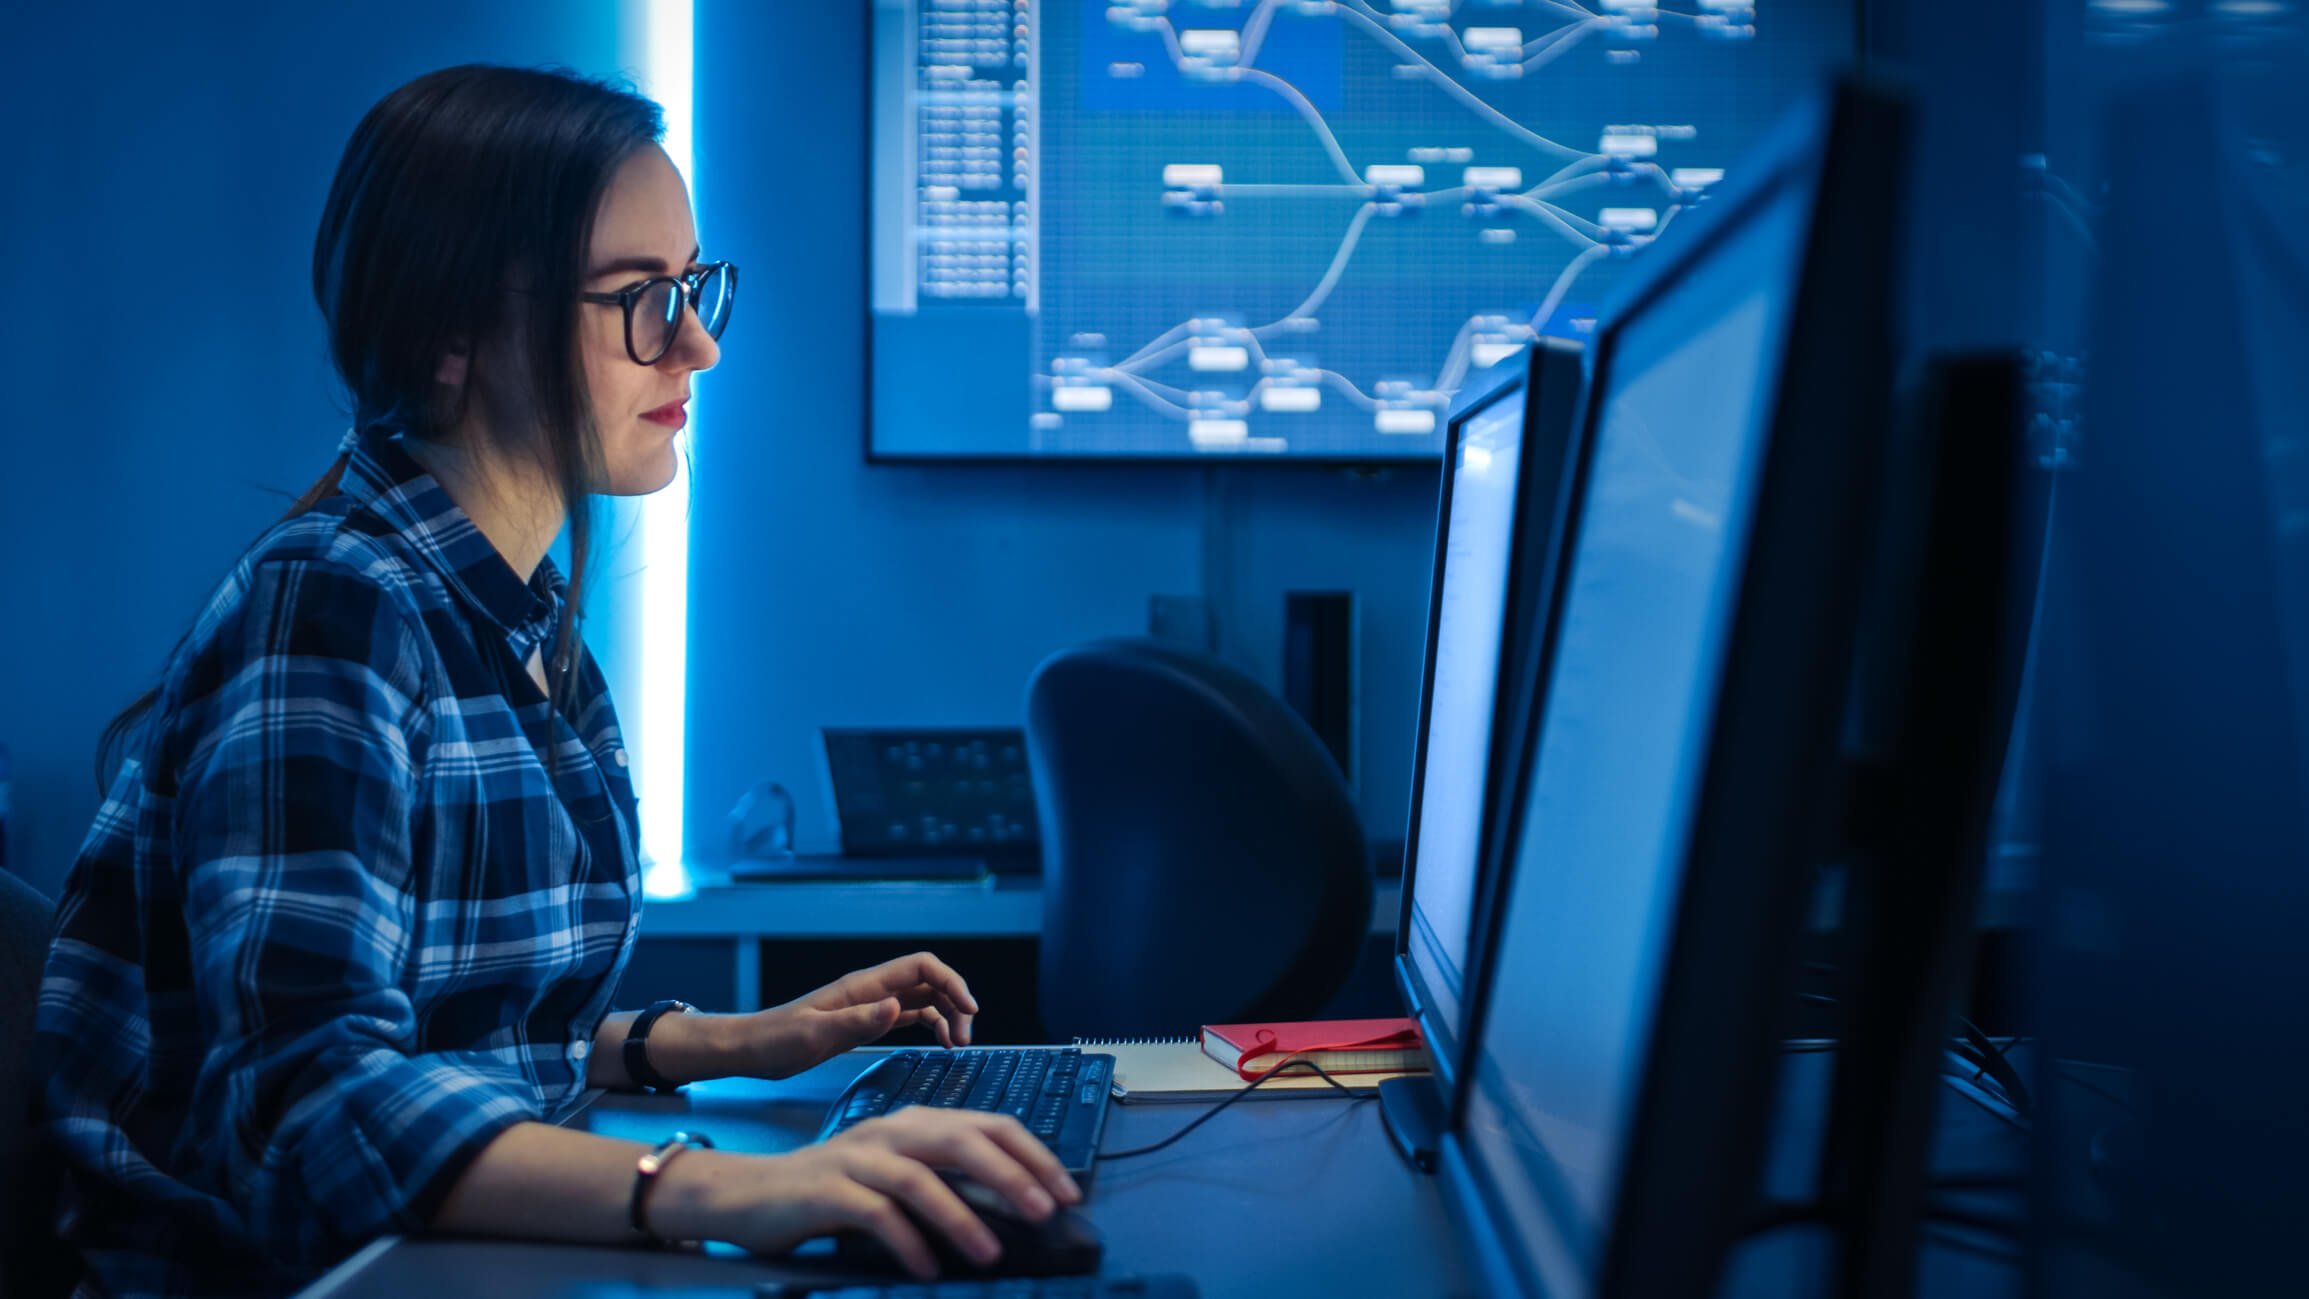 Mulher jovem com a mão no mouse olhando para a tela de um computador em um ambiente com luz azul